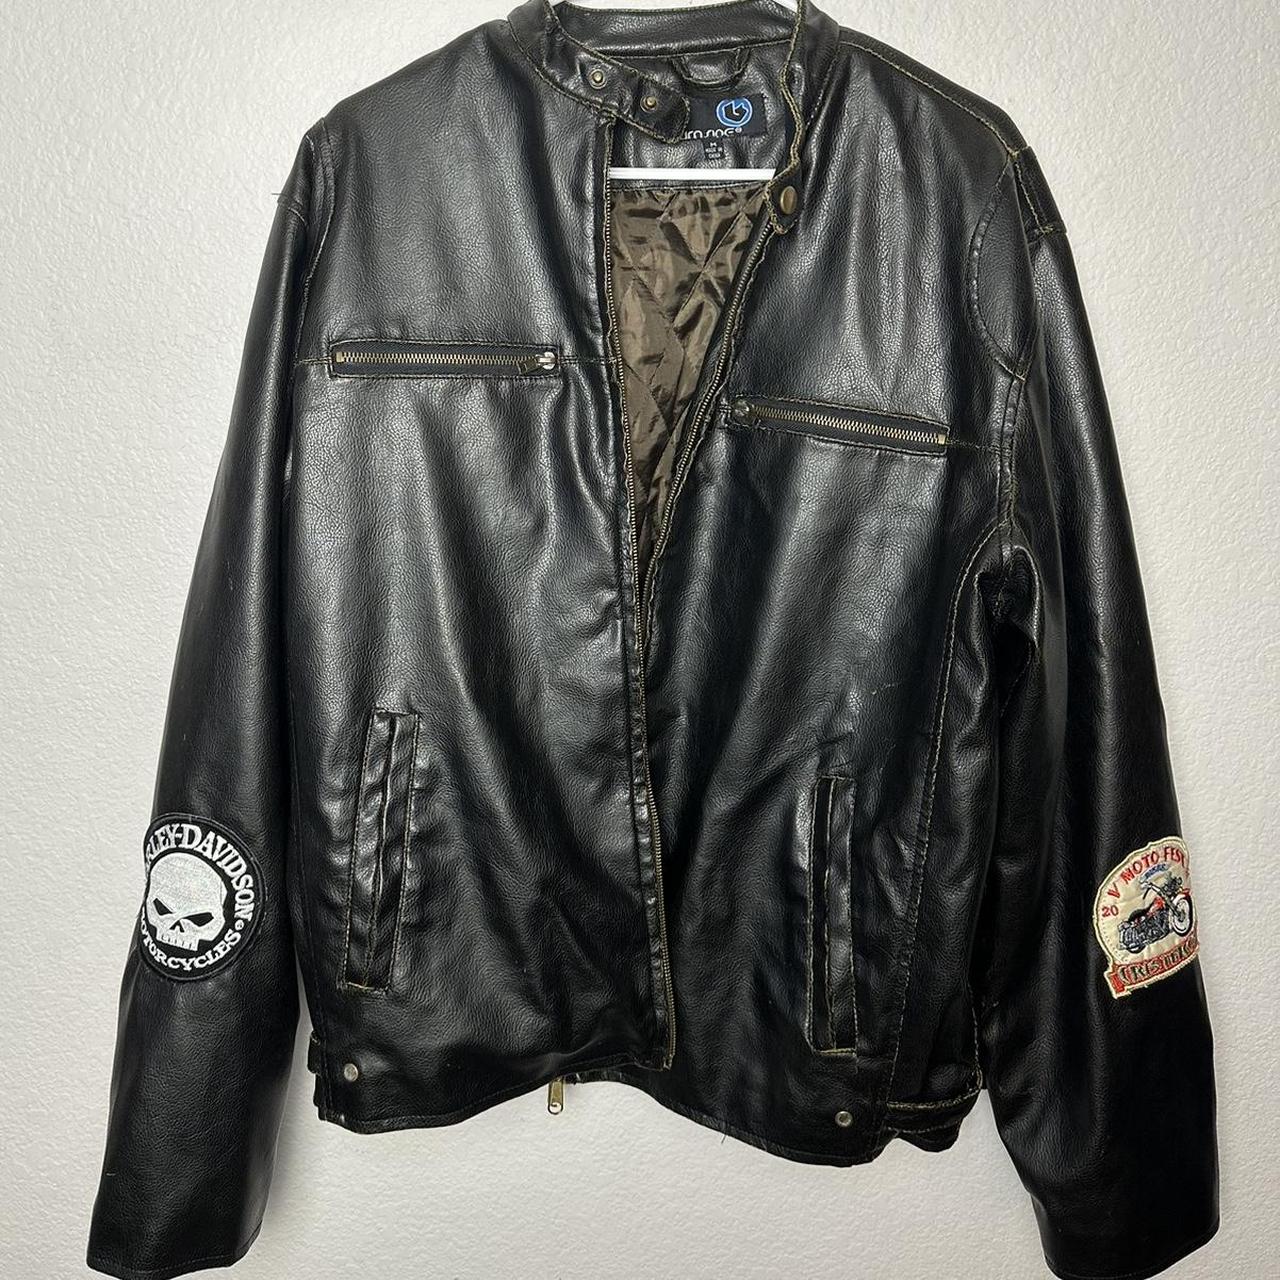 Genuine Leather Motorcycle Biker Jacket with Harley... - Depop